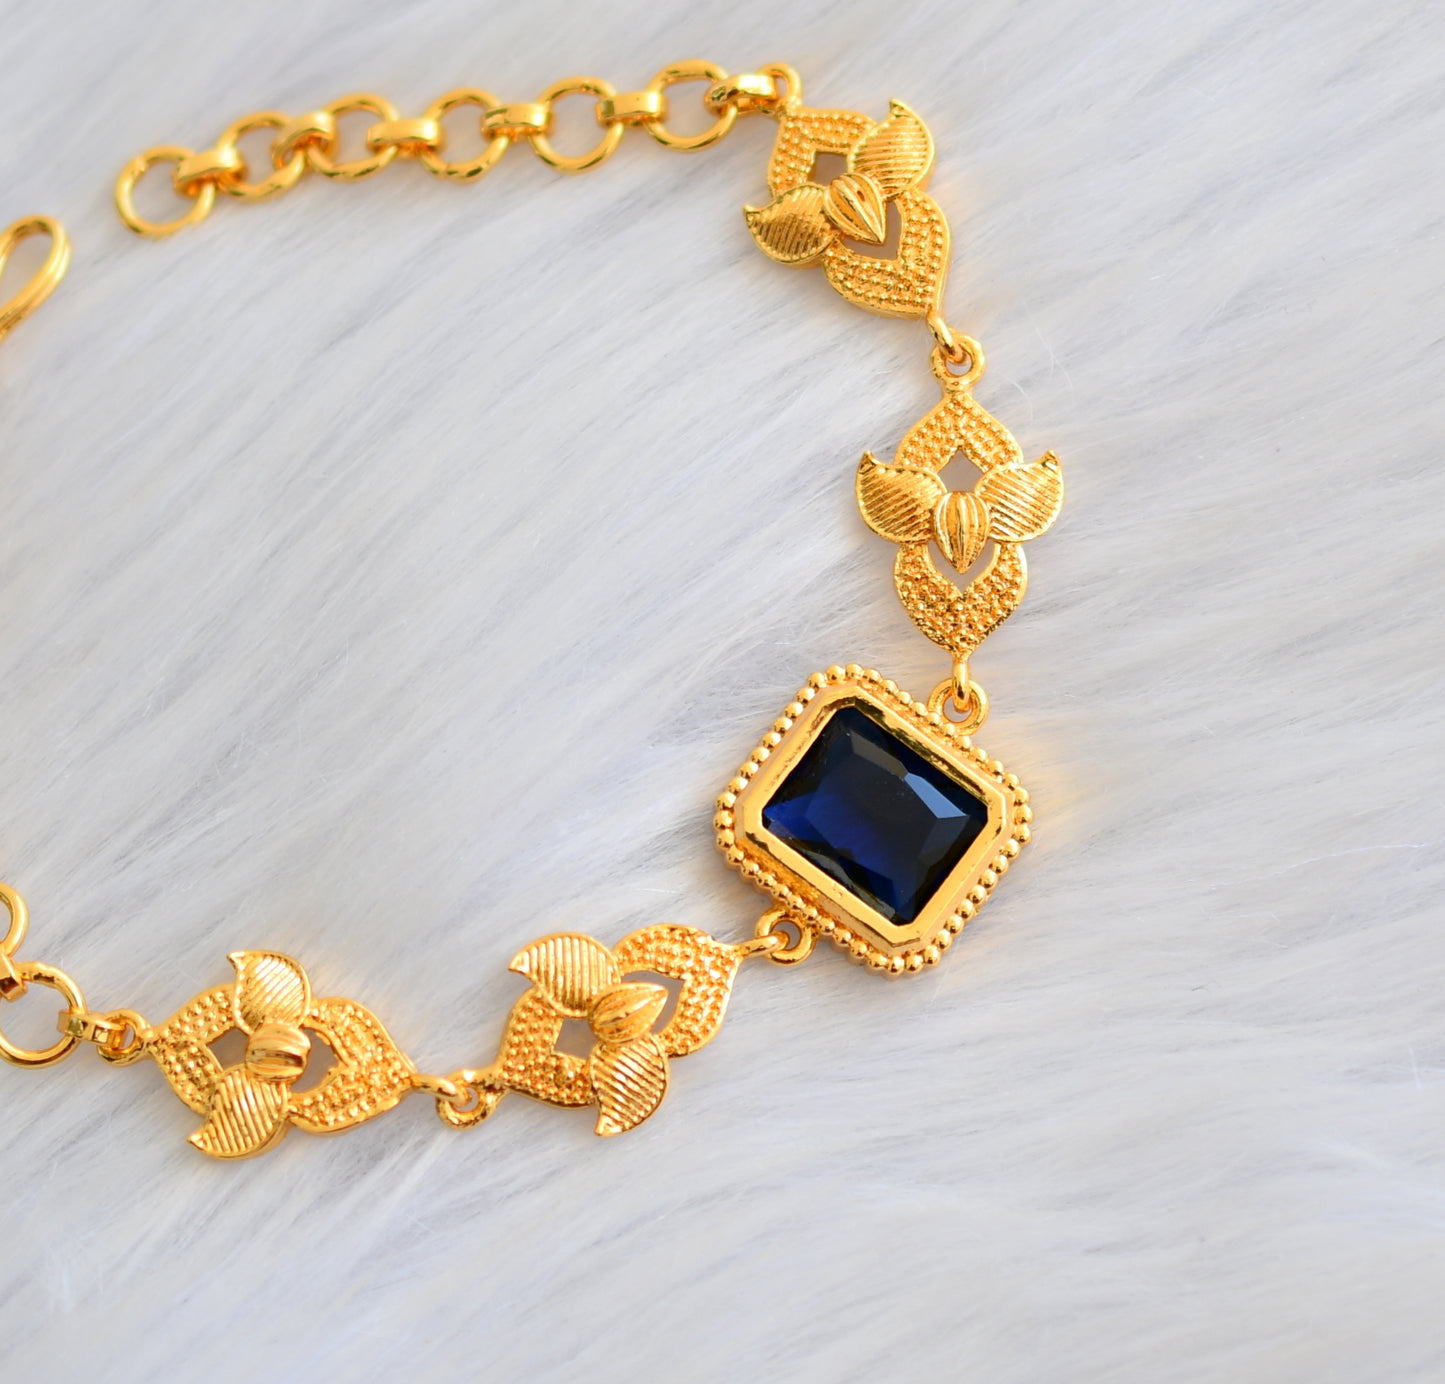 Gold tone blue block stone bracelet dj-40511